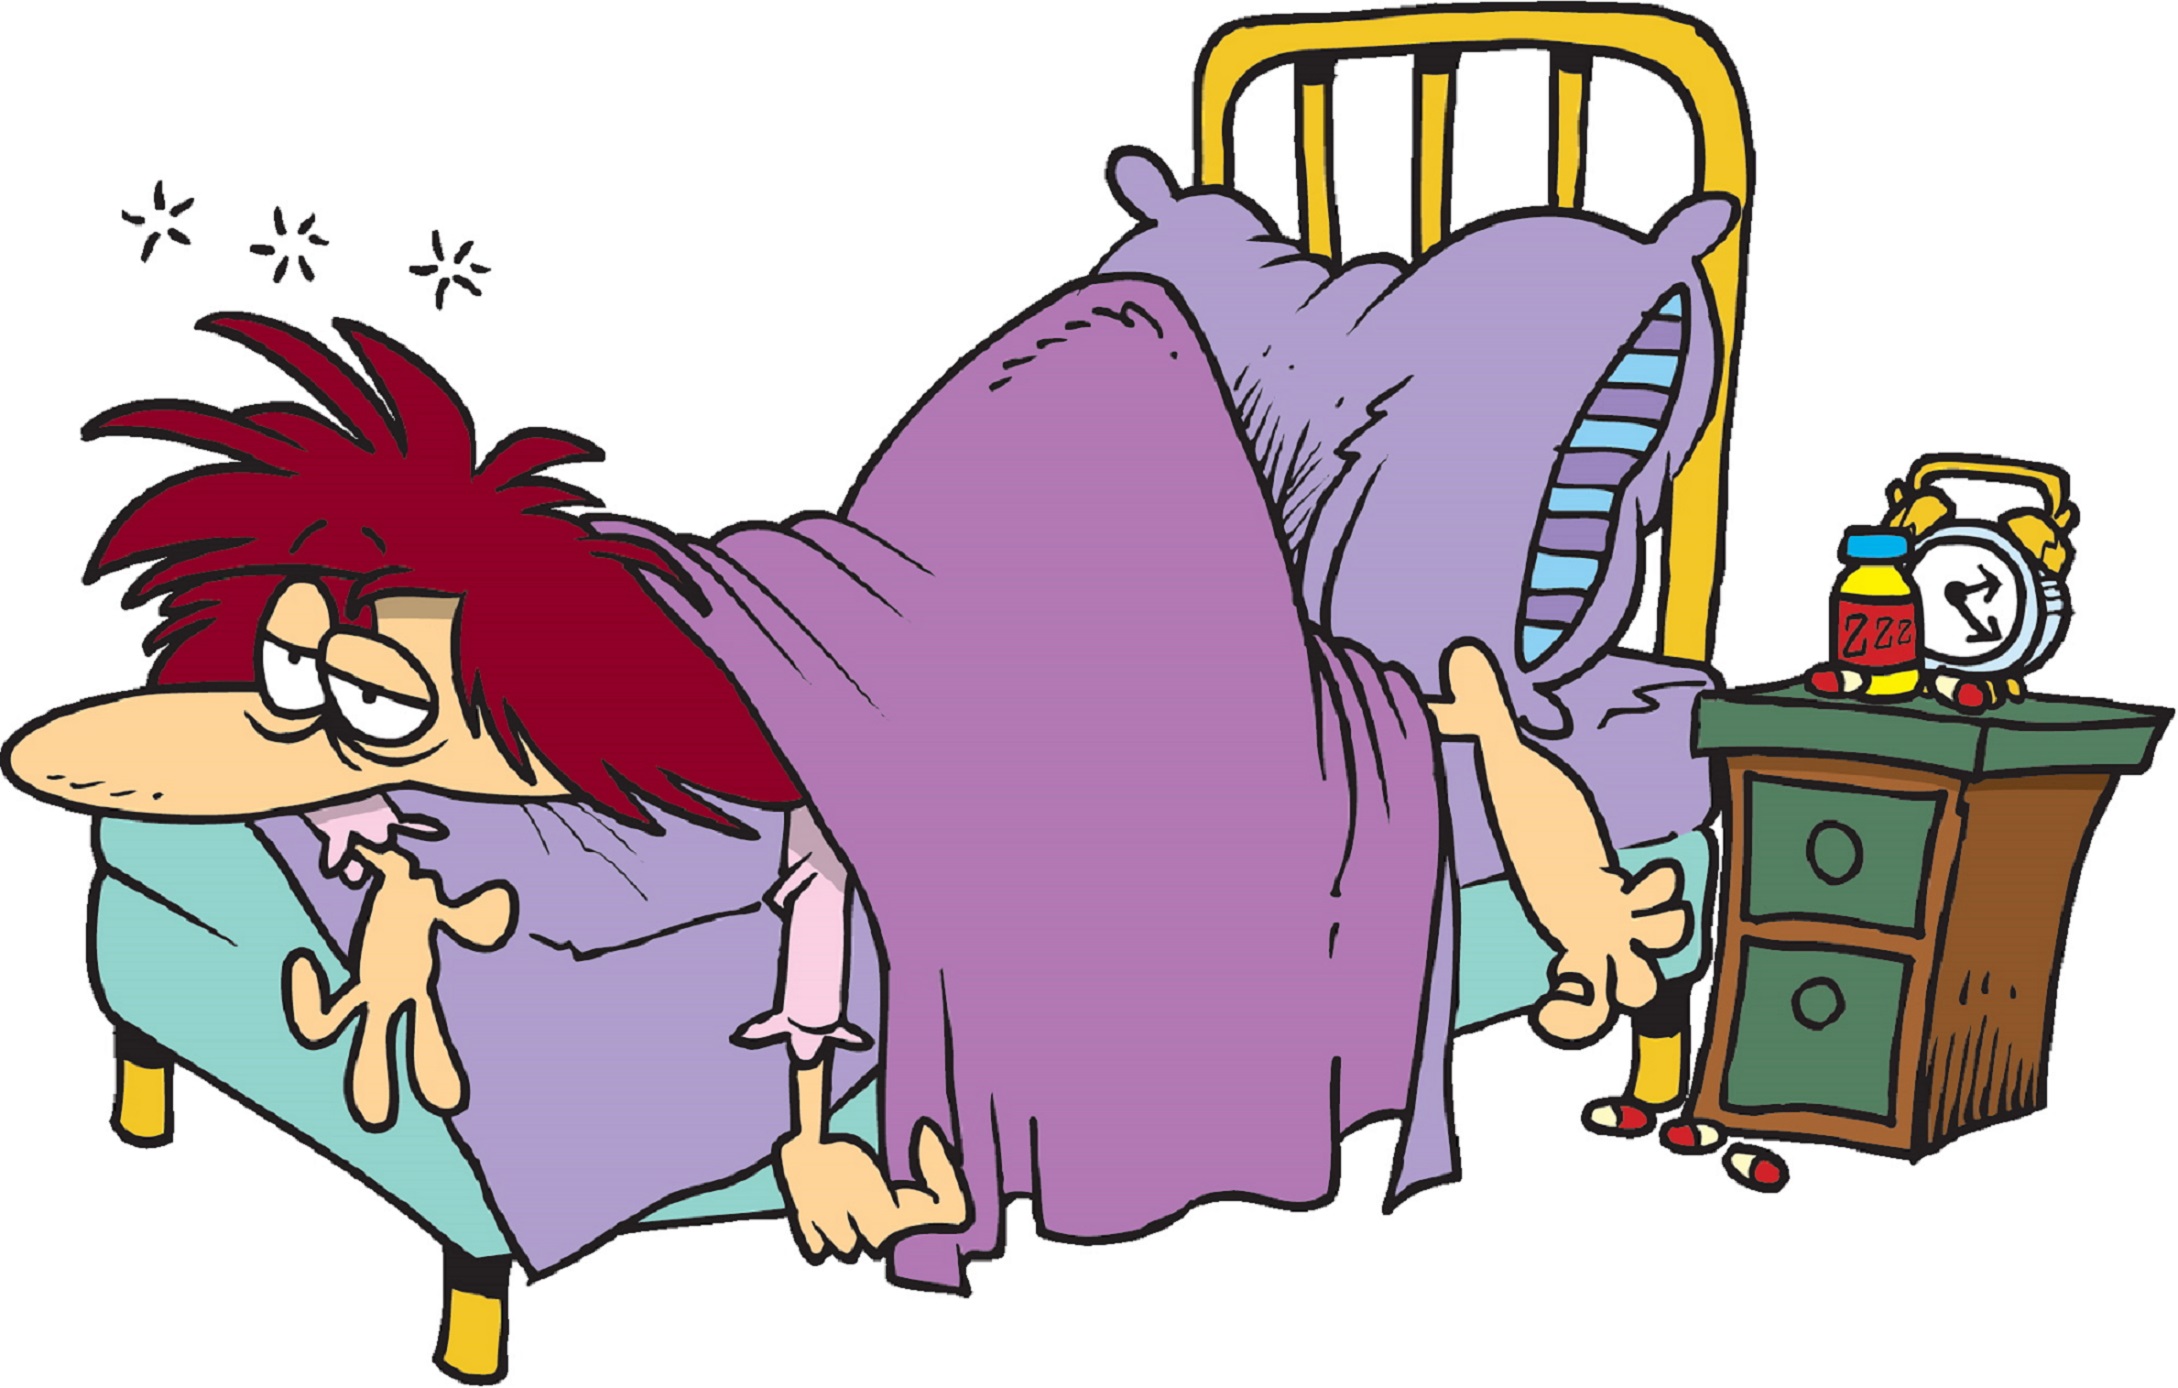 Картинка смешная больным. Карикатура больной в кровати. Больной человек карикатура. Бессонница карикатура. Уставшая женщина карикатура.